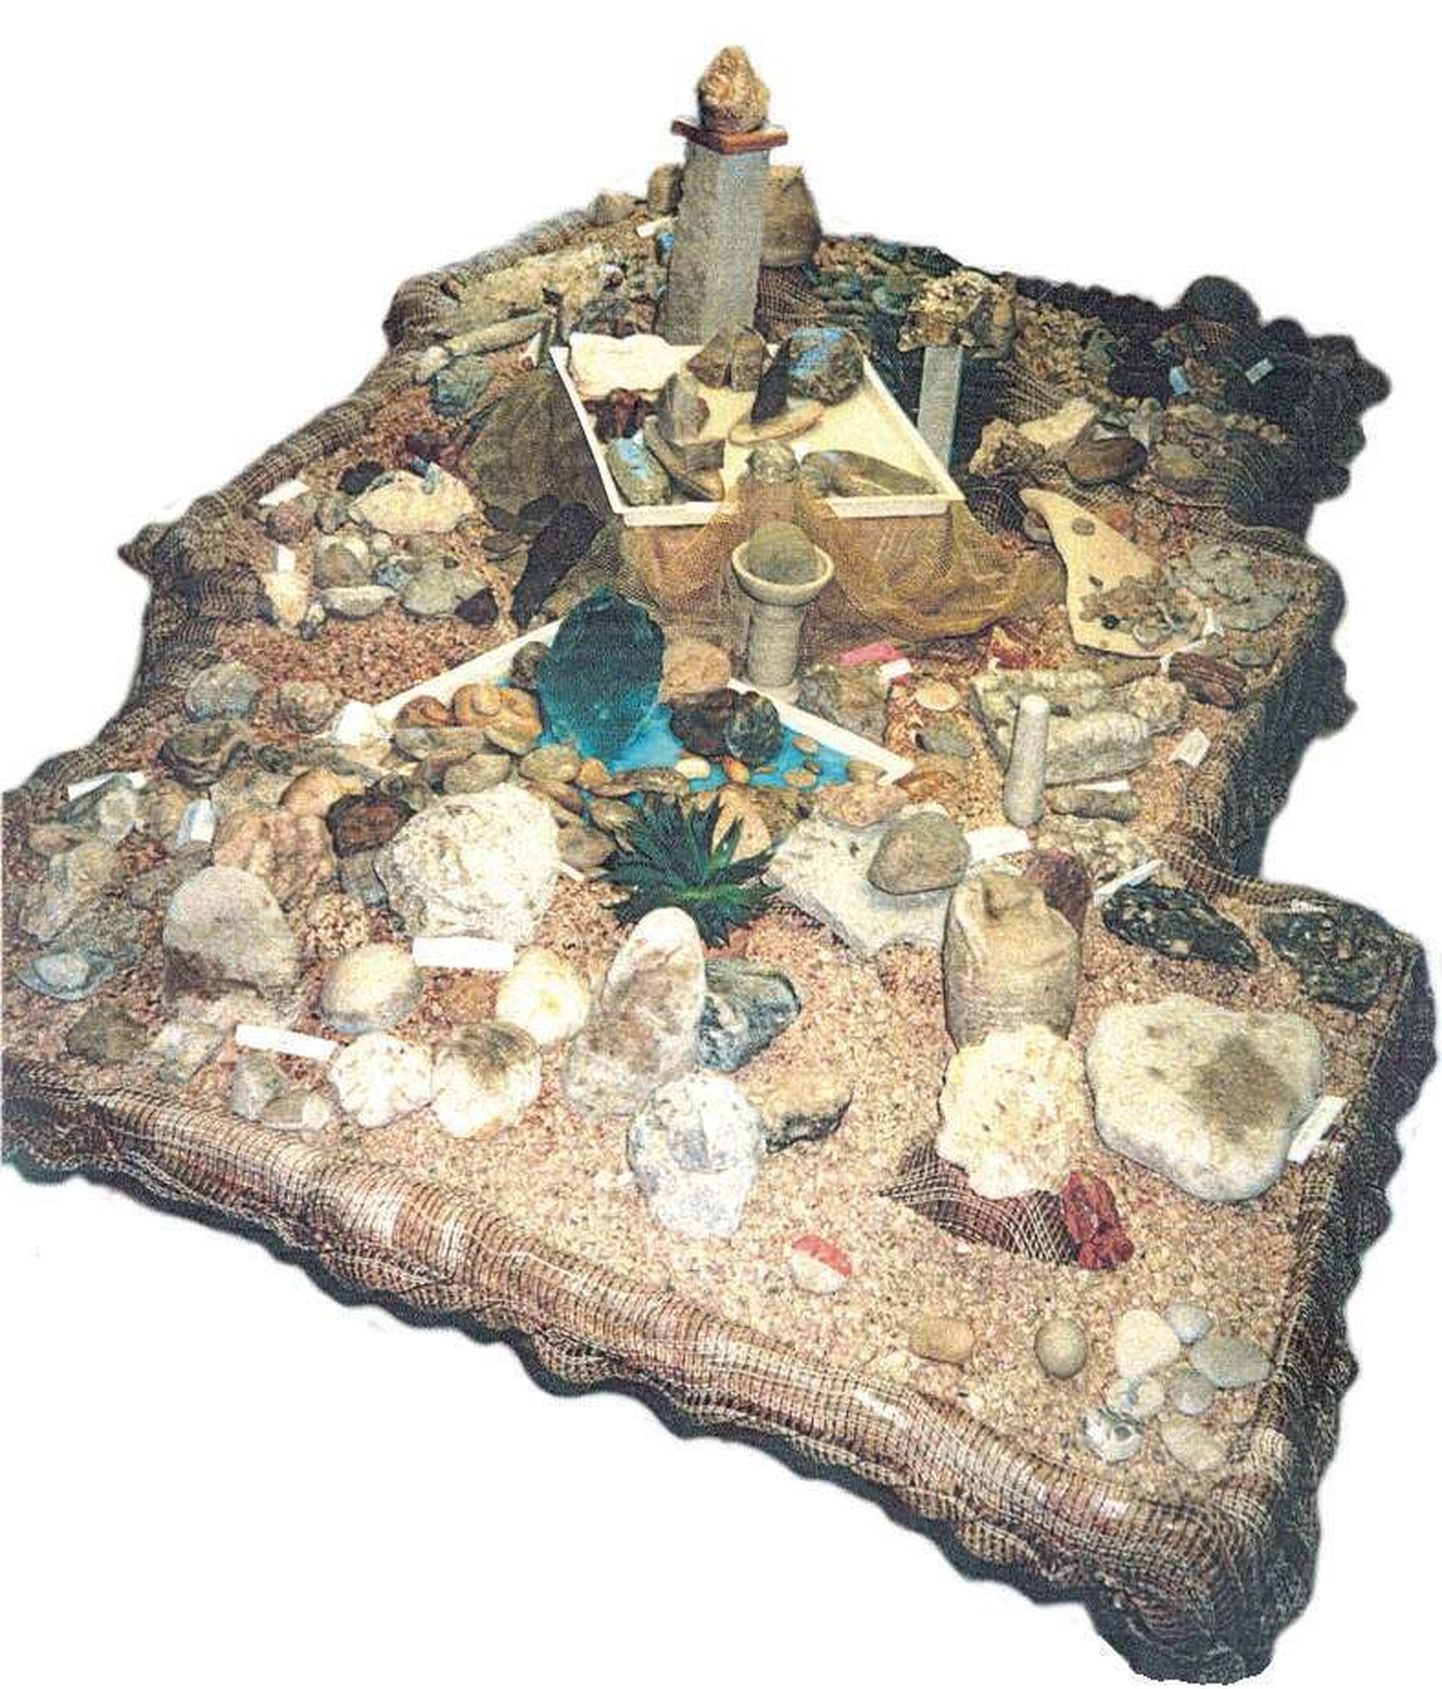 Fotol on osa Tohisoo mõisas 2000. aastal 
eksponeeritud Maie Kolditsi kivinäitusest.